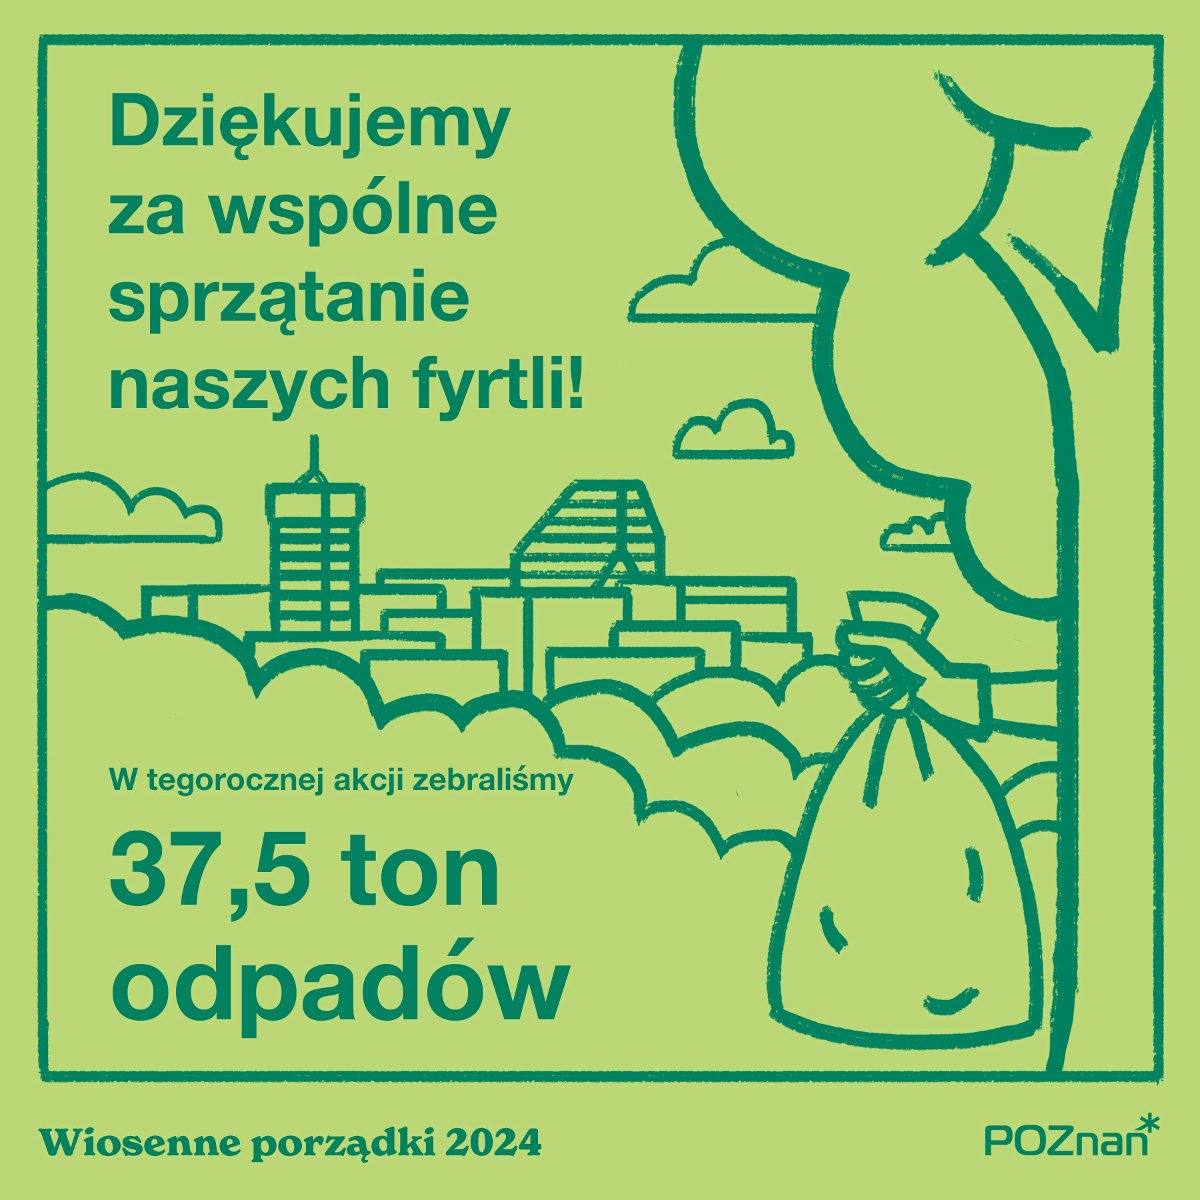 Plakat przedstawia panoramę Poznania. Na pierszym planie ręka trzymająca worek ze śmieciami. Na plakacie napis: Dziękujemy za wspólne sprzątanie naszych fyrtli! W tegorocznej edycji zebraliśmy 37,5 ton odpadów.